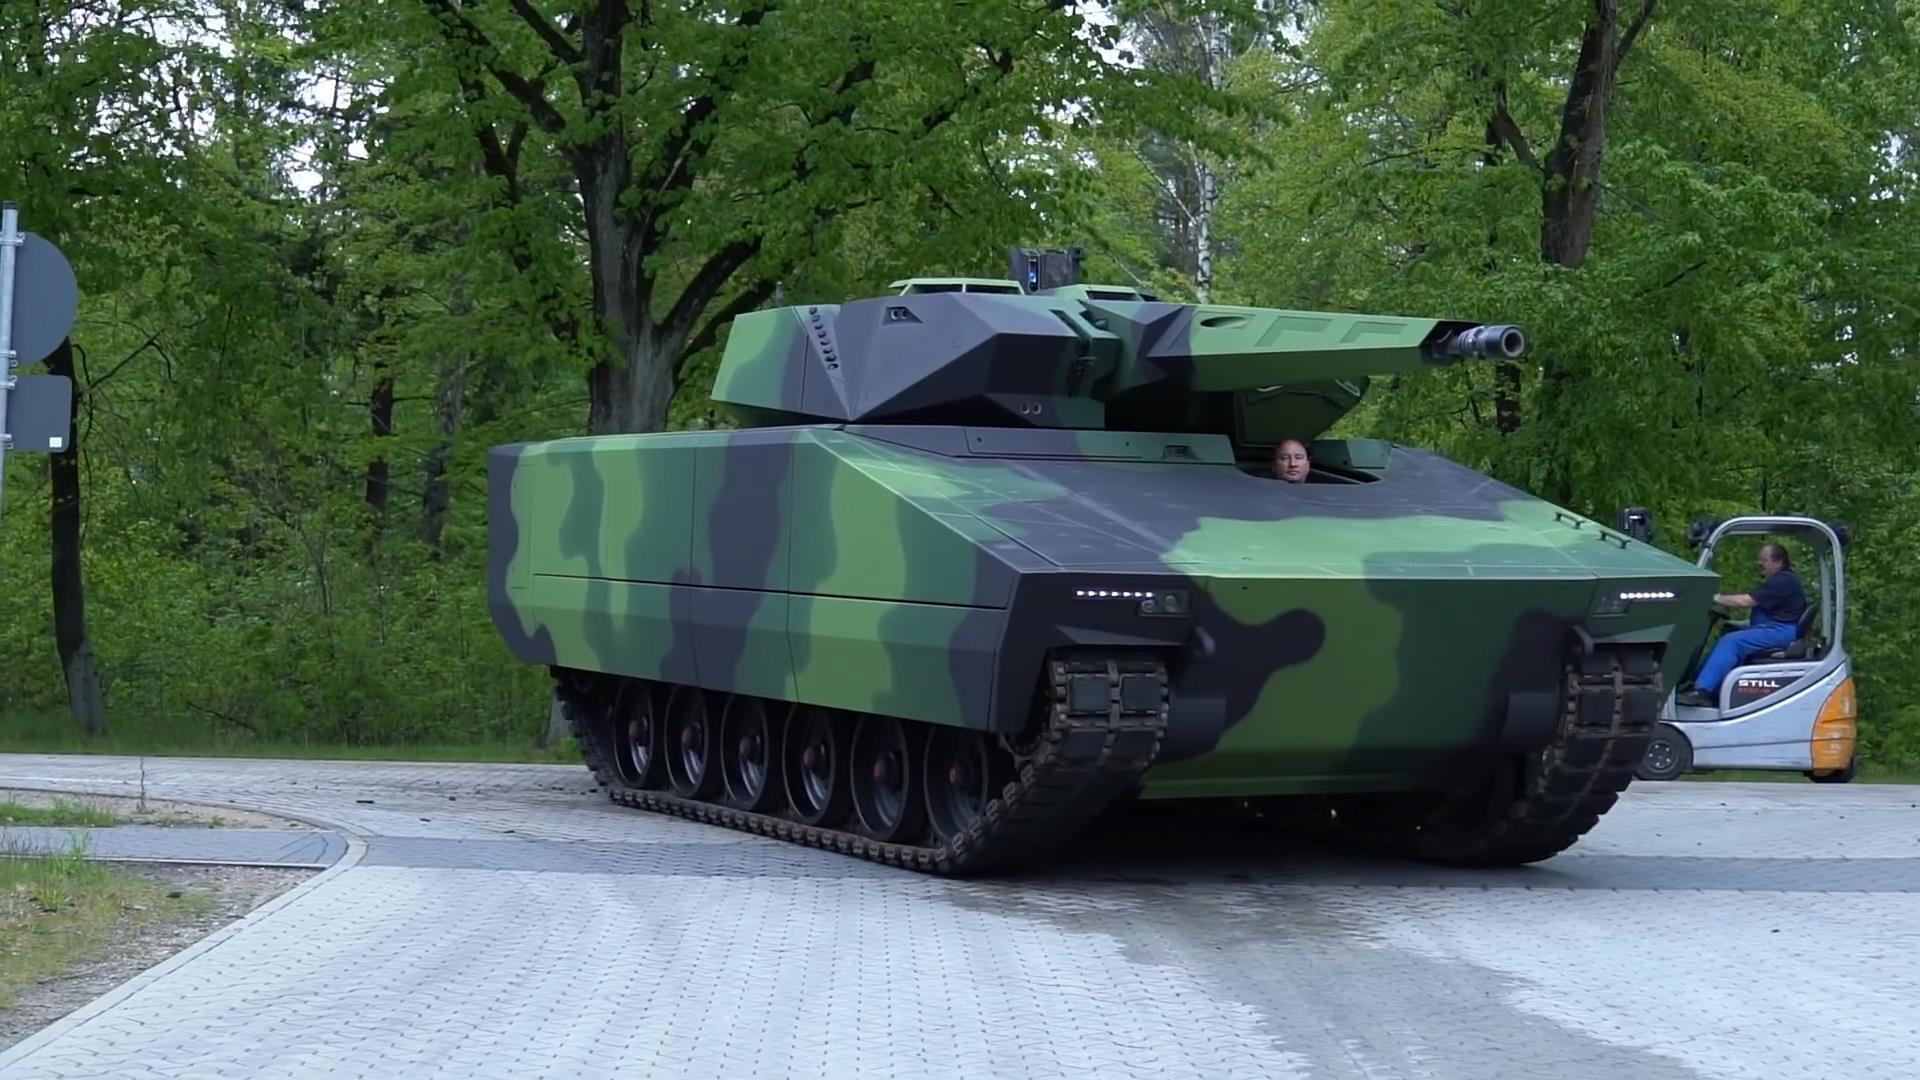 德国莱茵金属公司推出山猫kf41履带式步兵战车外形相当科幻